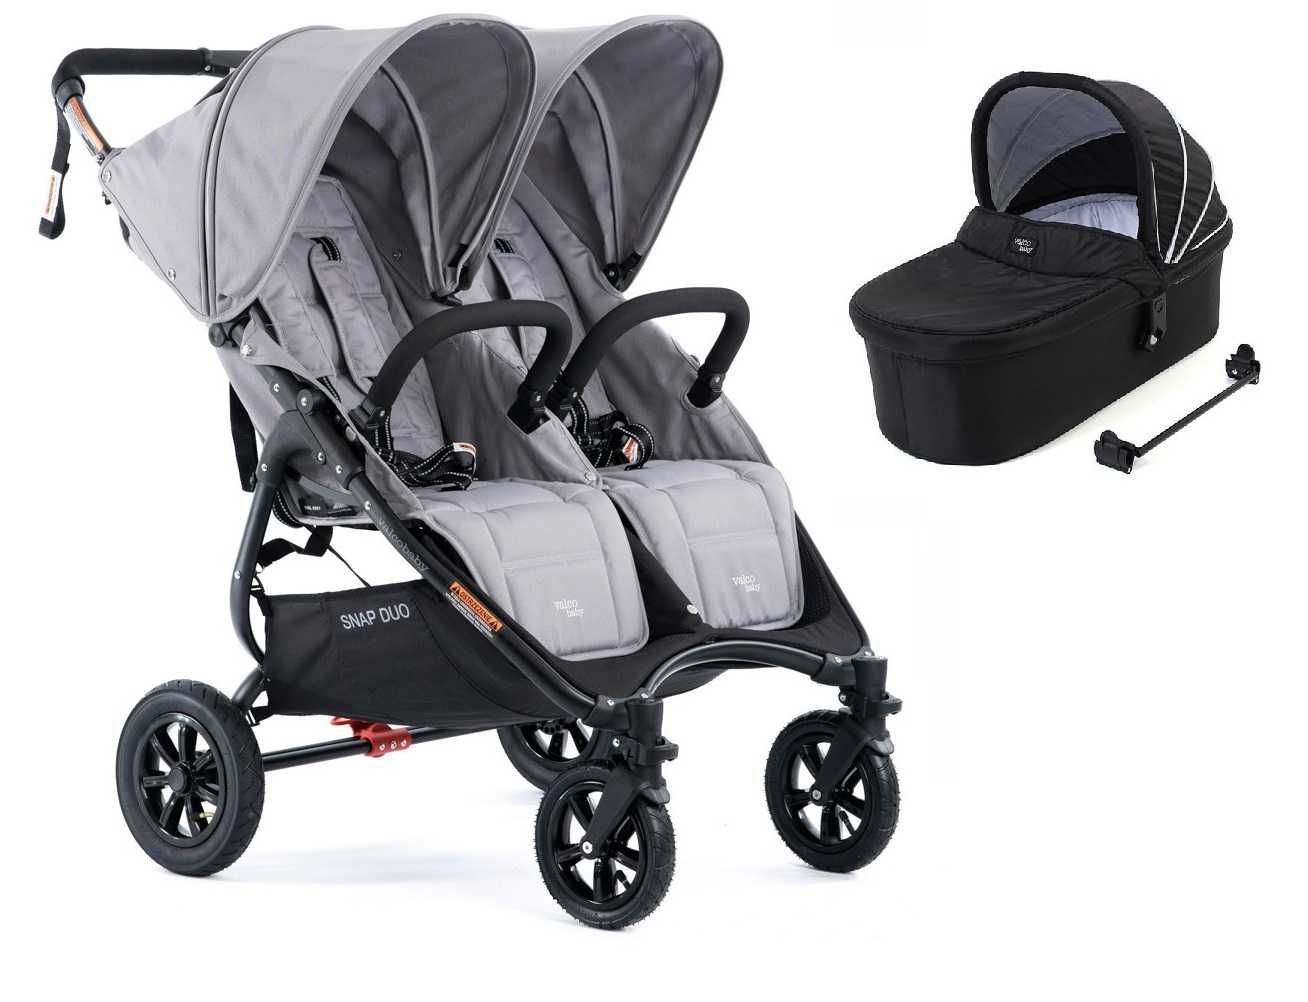 Valco Baby Snap Duo Sport wózek + gondola rok po roku, bliźniaczy